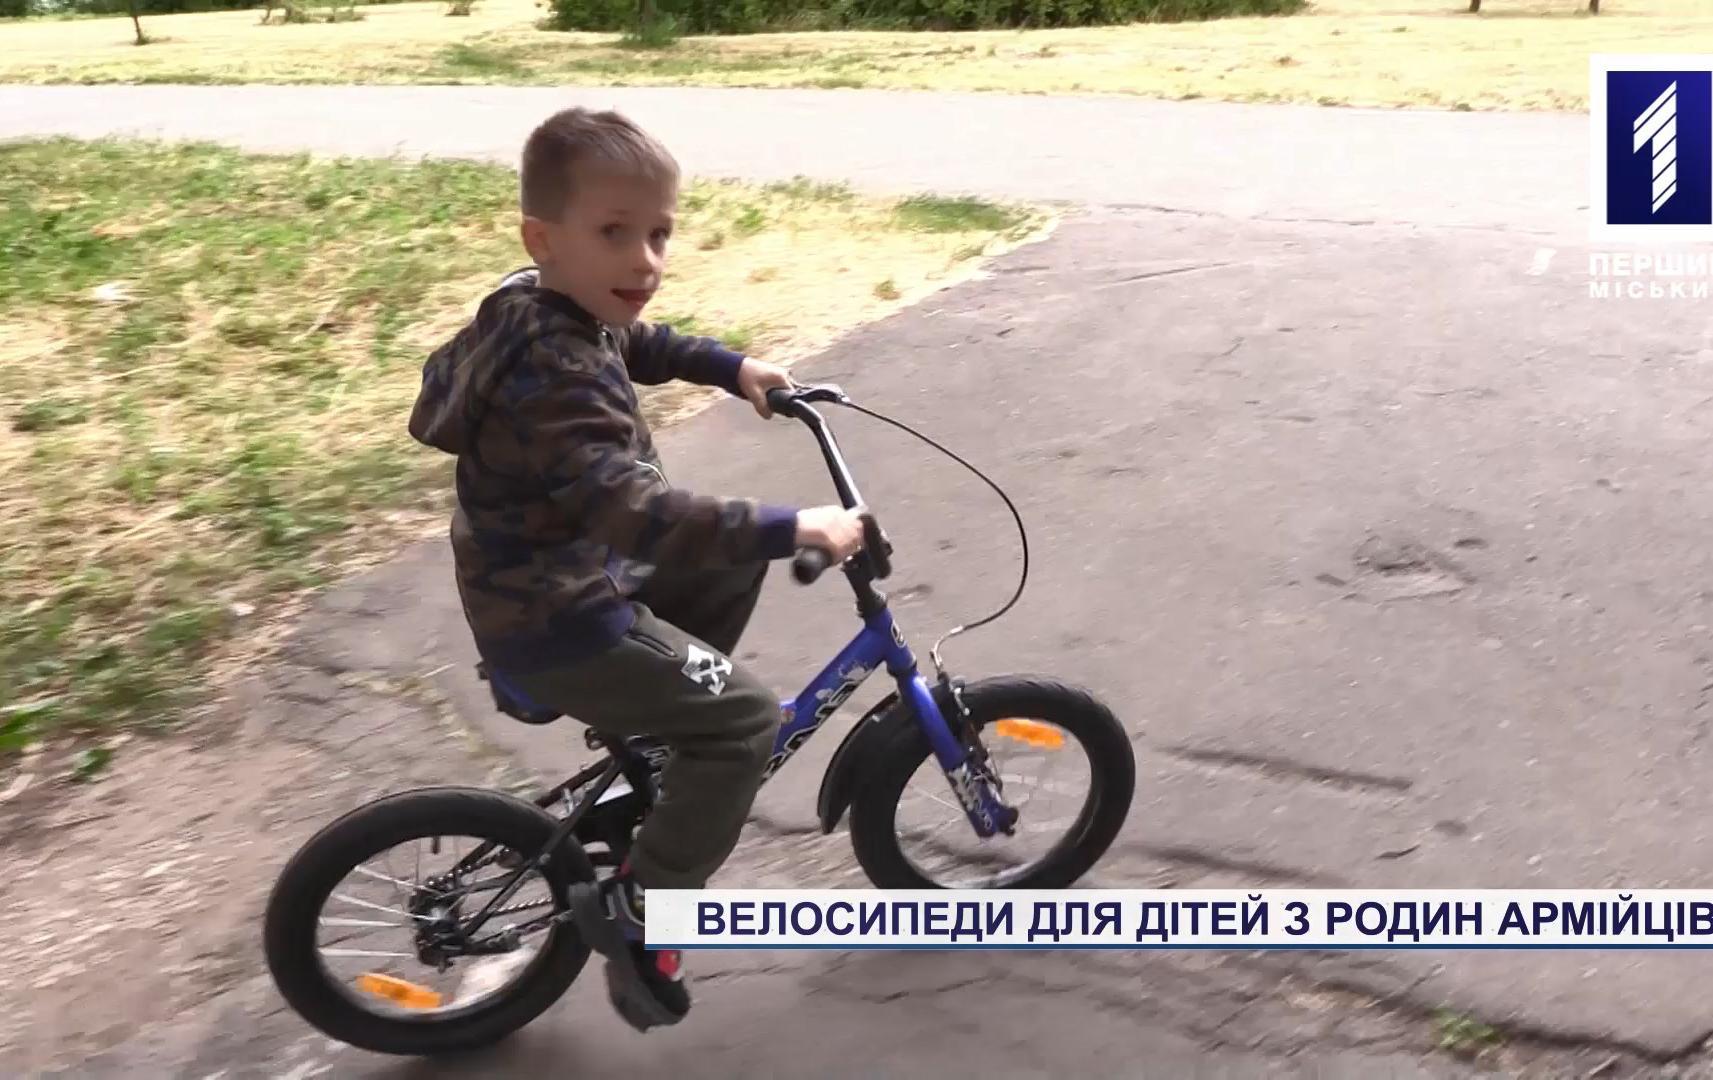 Дітям армійців подарували велосипеди в Кривому Розі